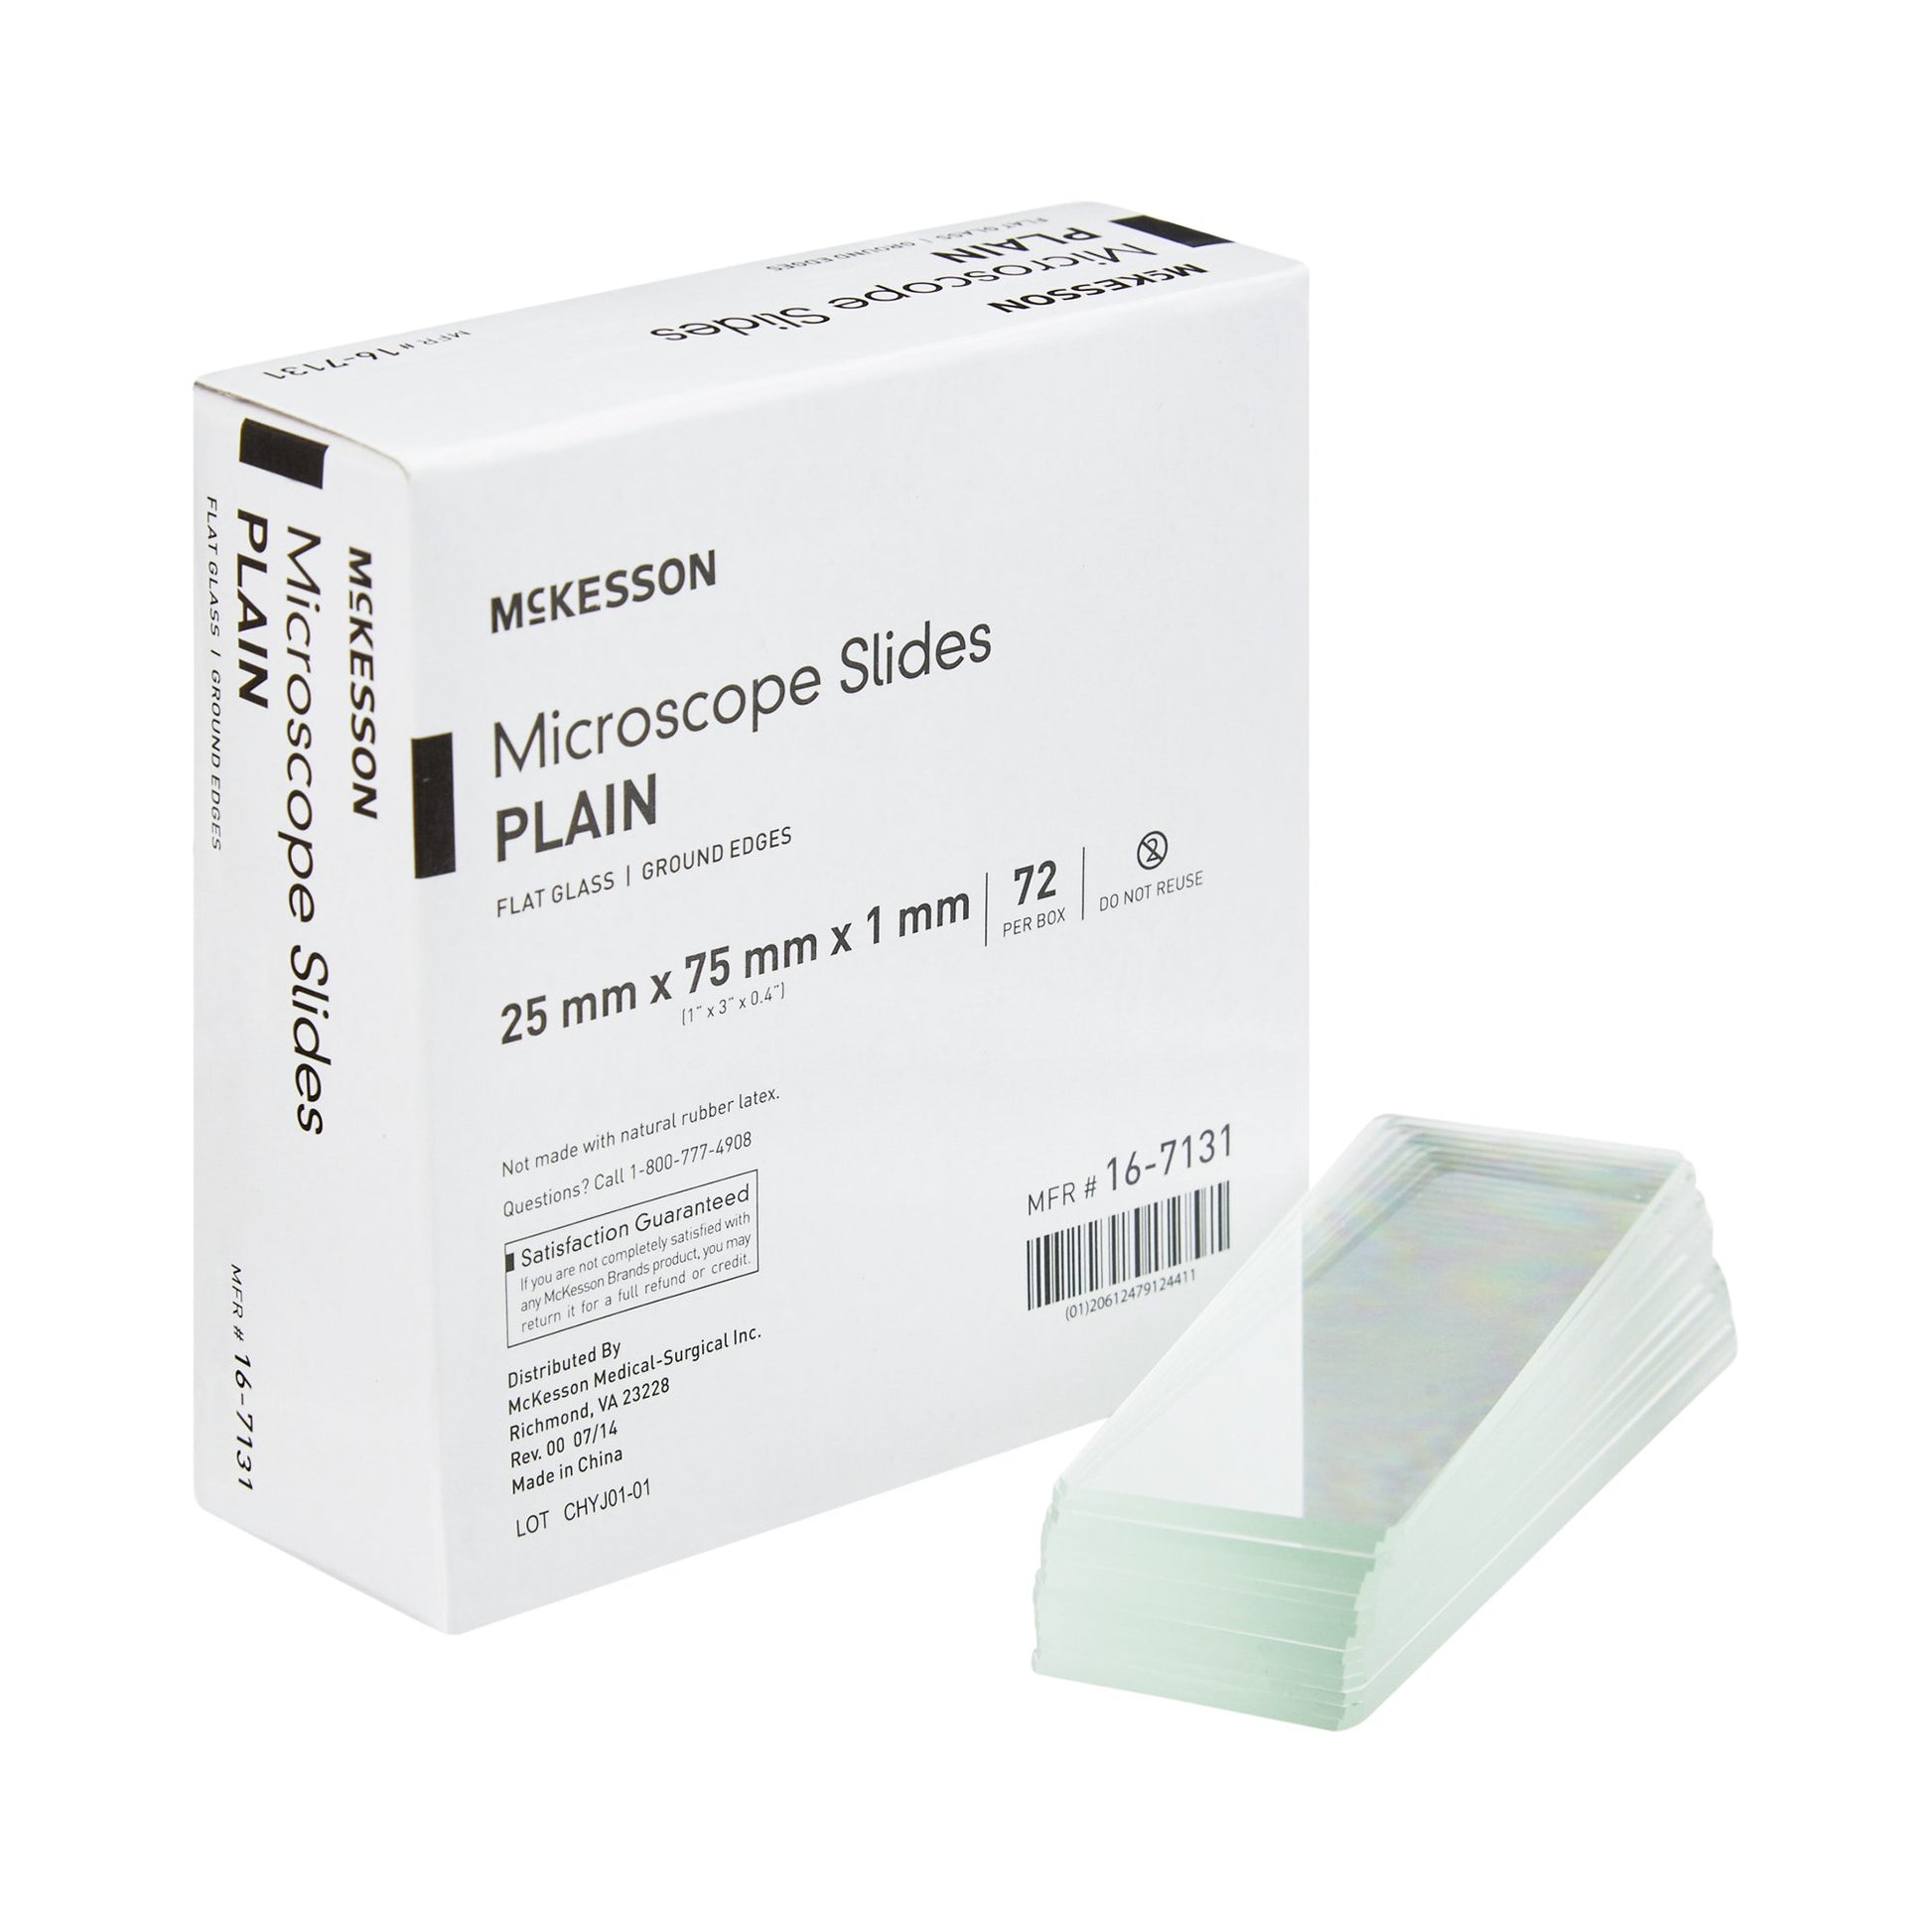 Mckesson Plain Microscope Slide, 1 X 3 Inch, Sold As 20/Case Mckesson 16-7131